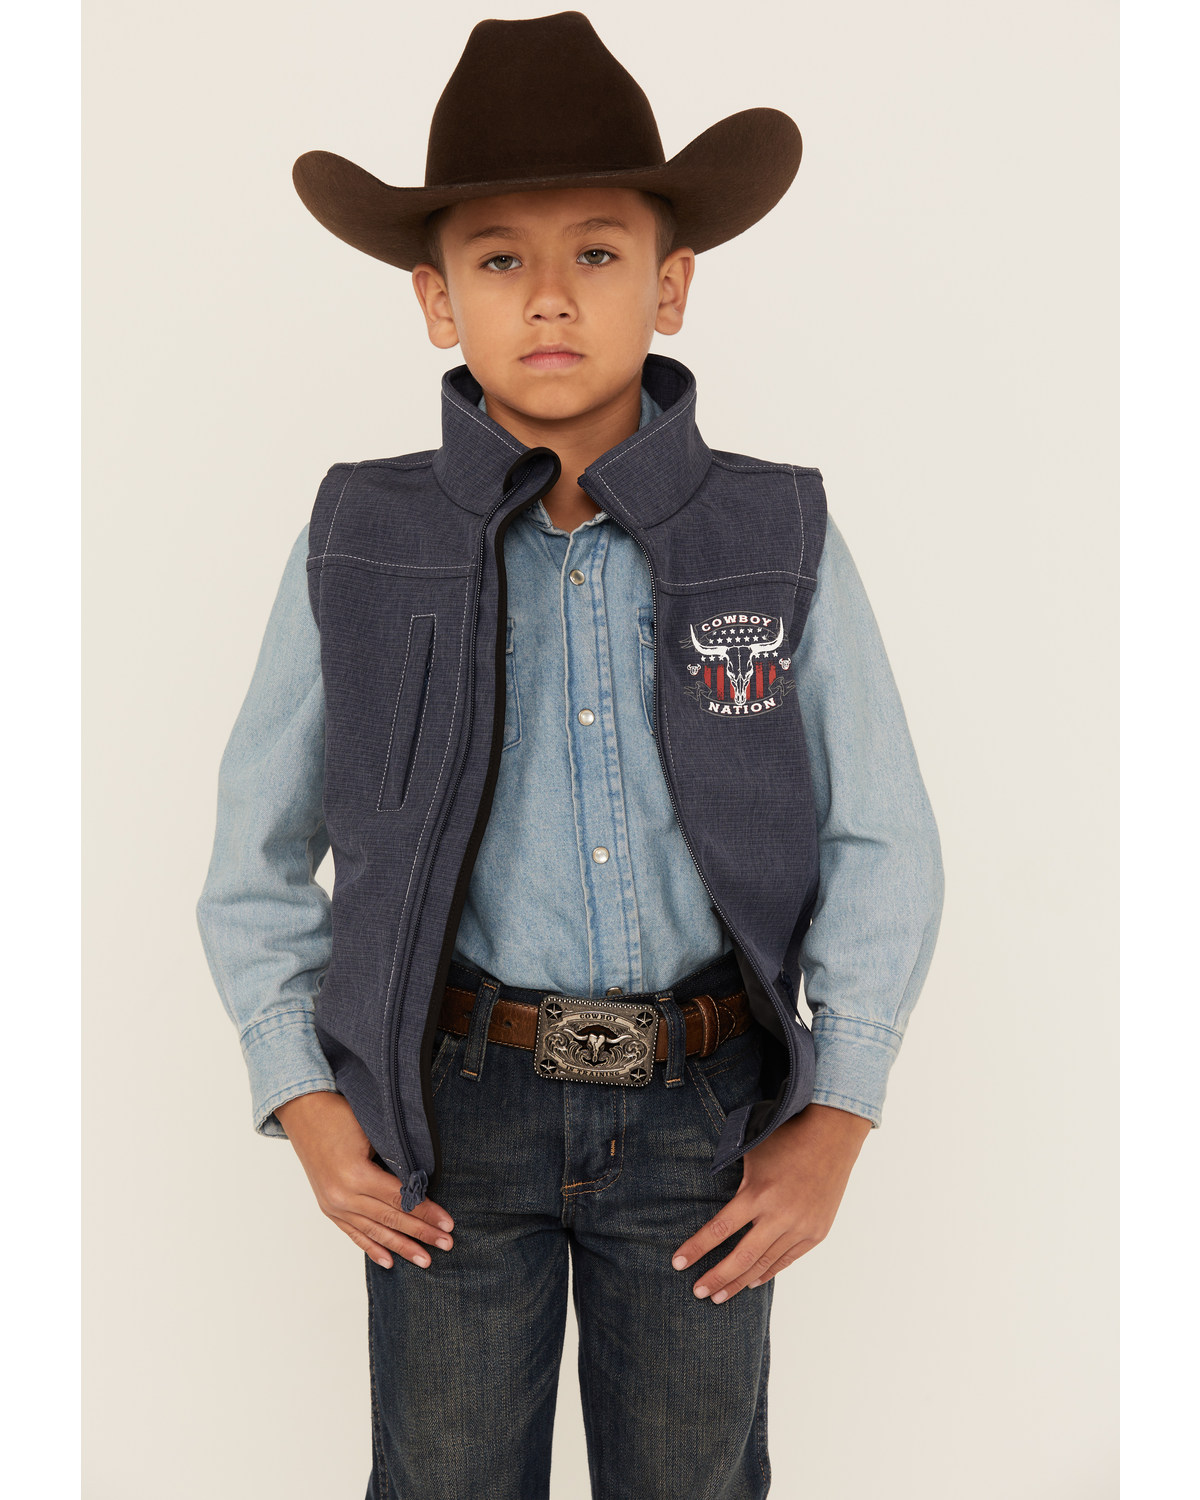 Cowboy Hardware Boys' Nation Poly Shell Vest